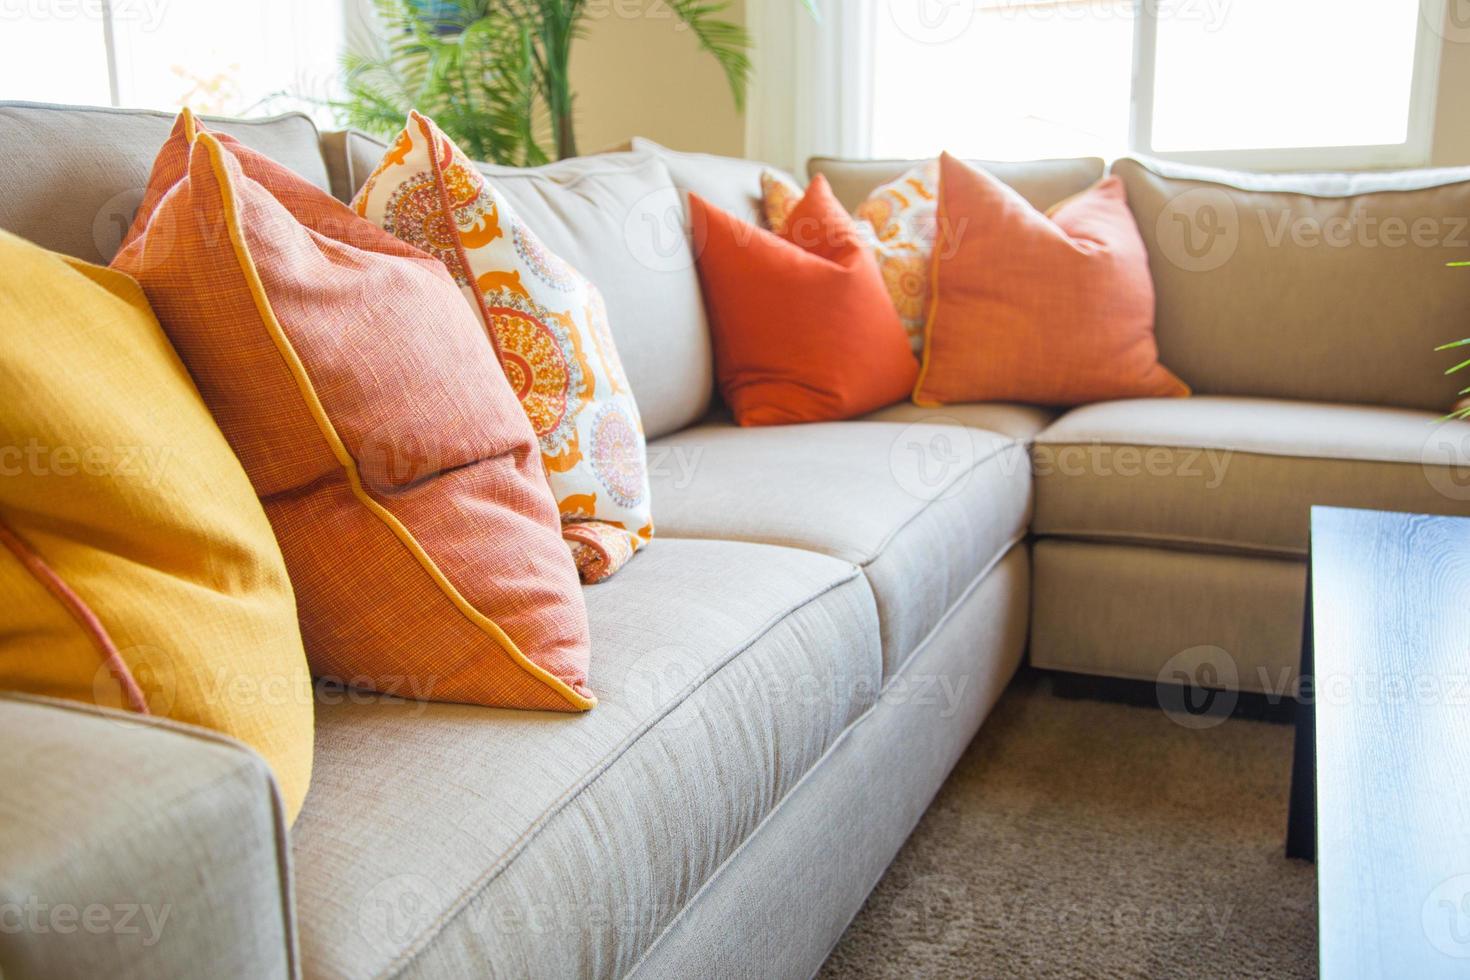 resumen de la acogedora y colorida sala de estar del sofá en casa foto